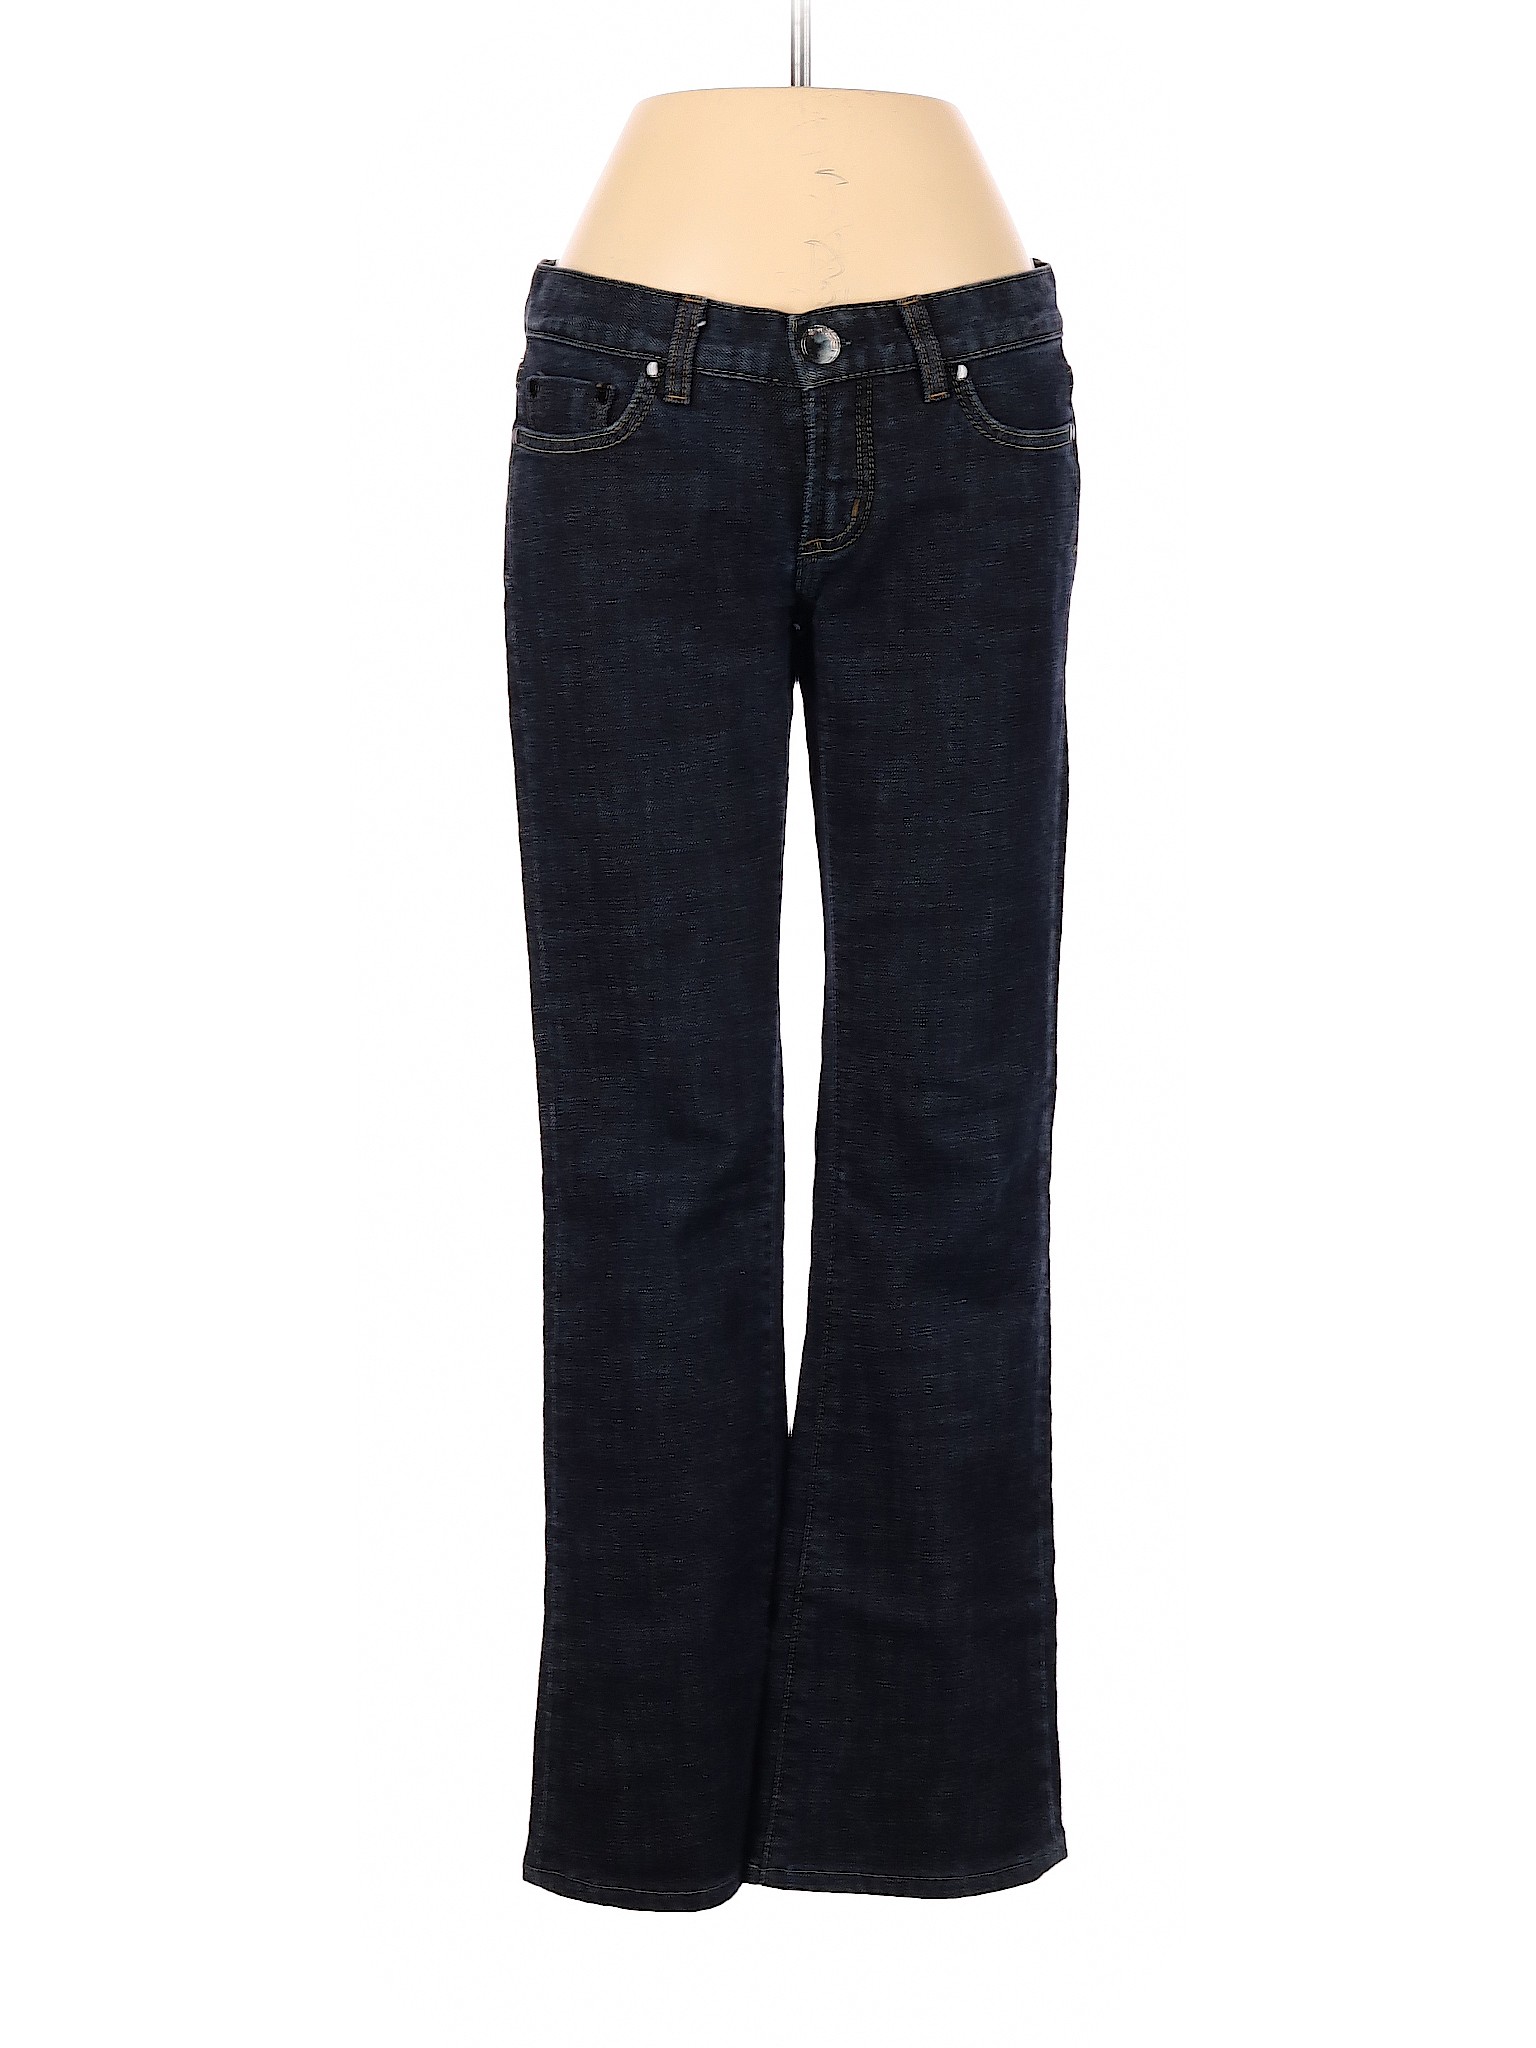 Bebe Women Black Jeans 26W | eBay